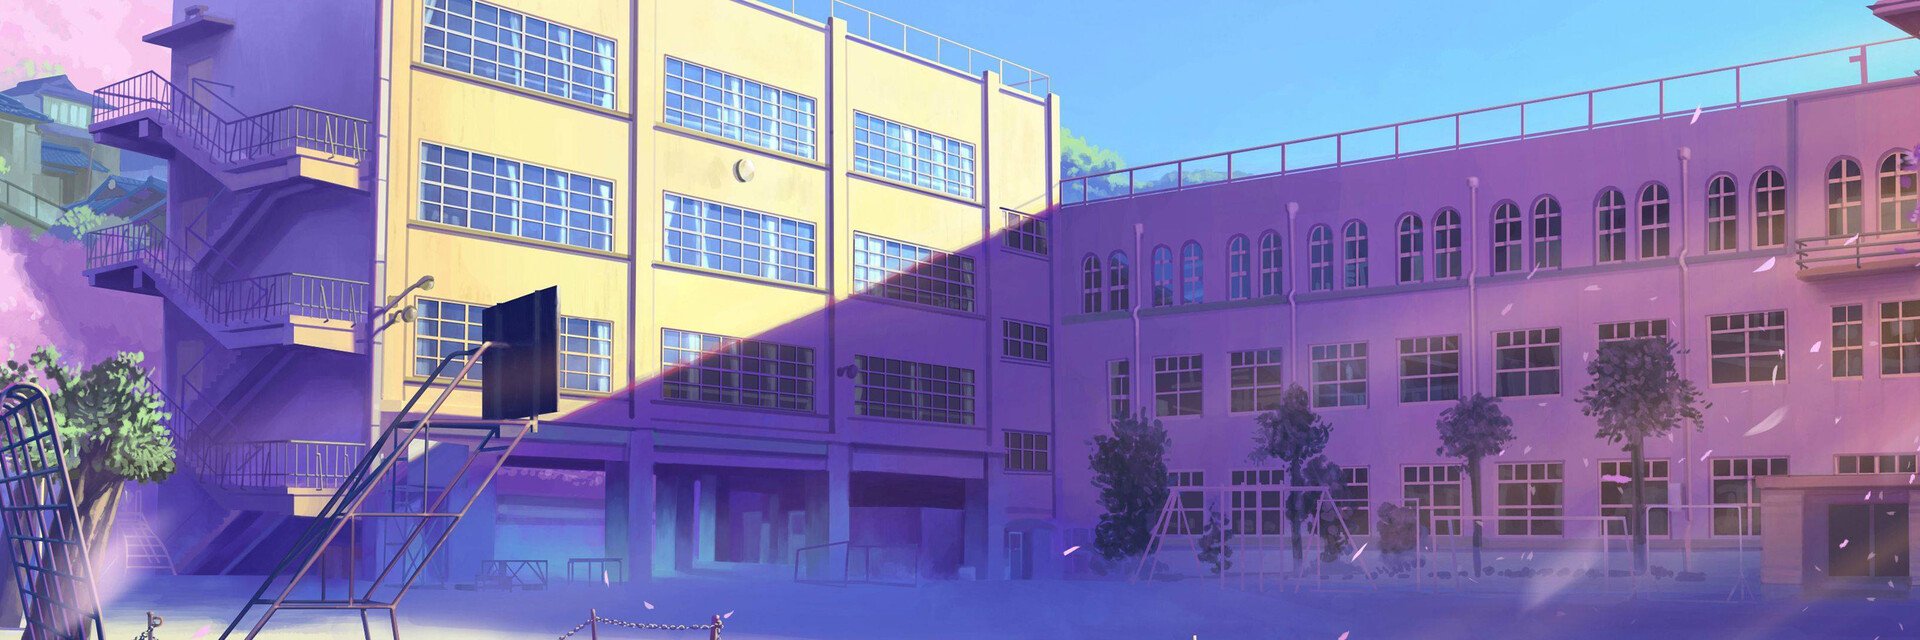 Крыша японской школы аниме